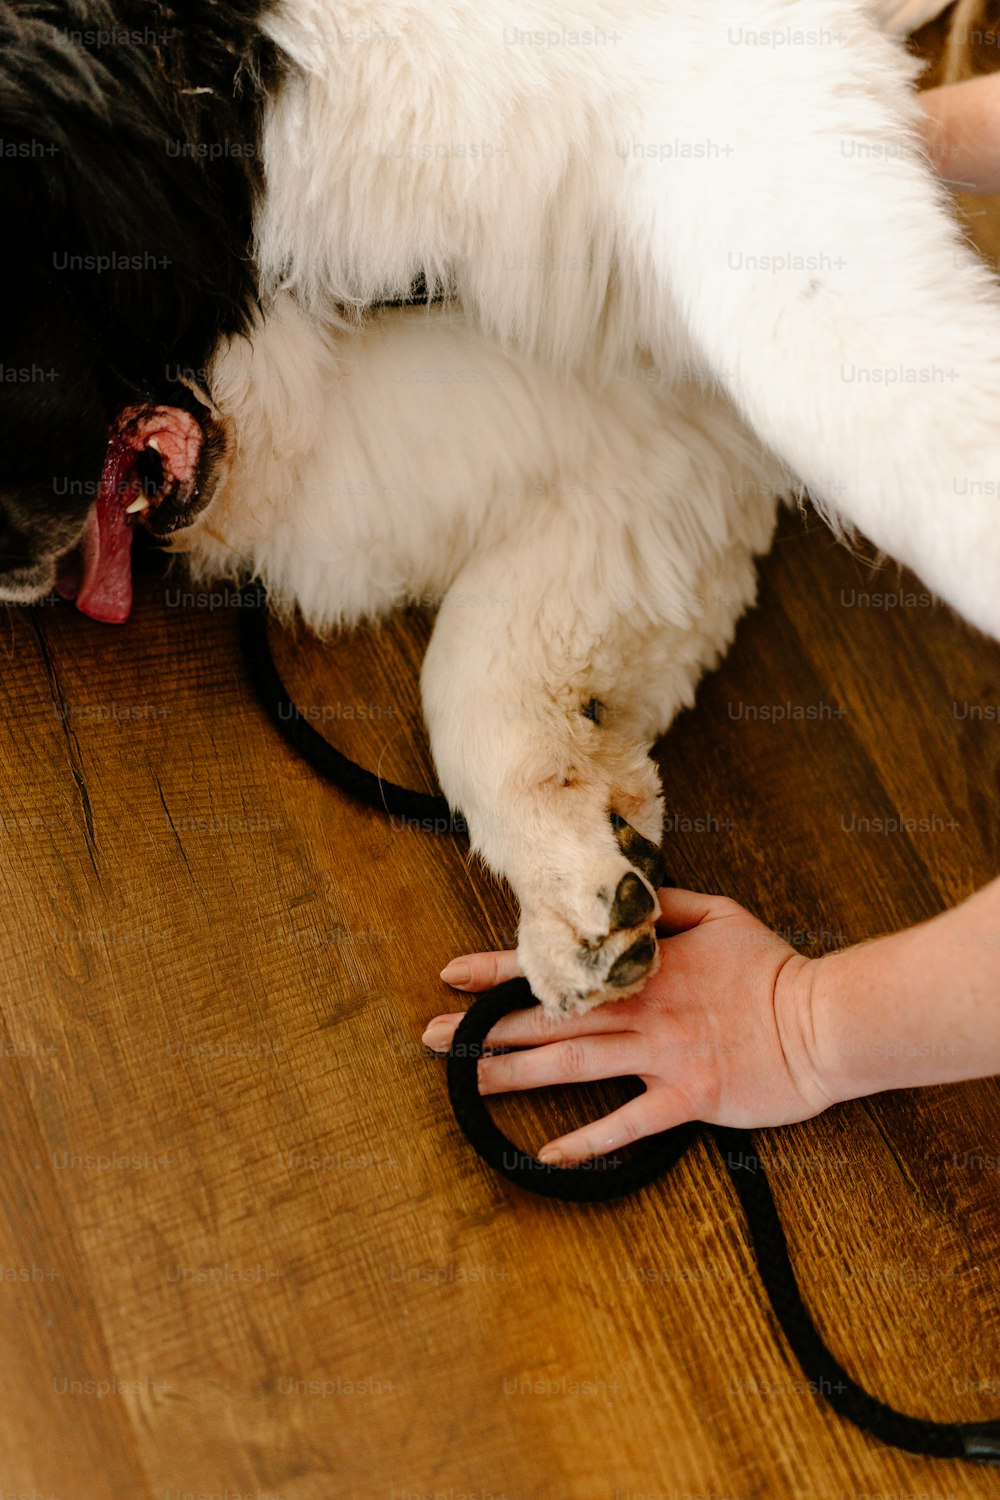 un cane sdraiato su un pavimento di legno tenuto dalla mano di una persona